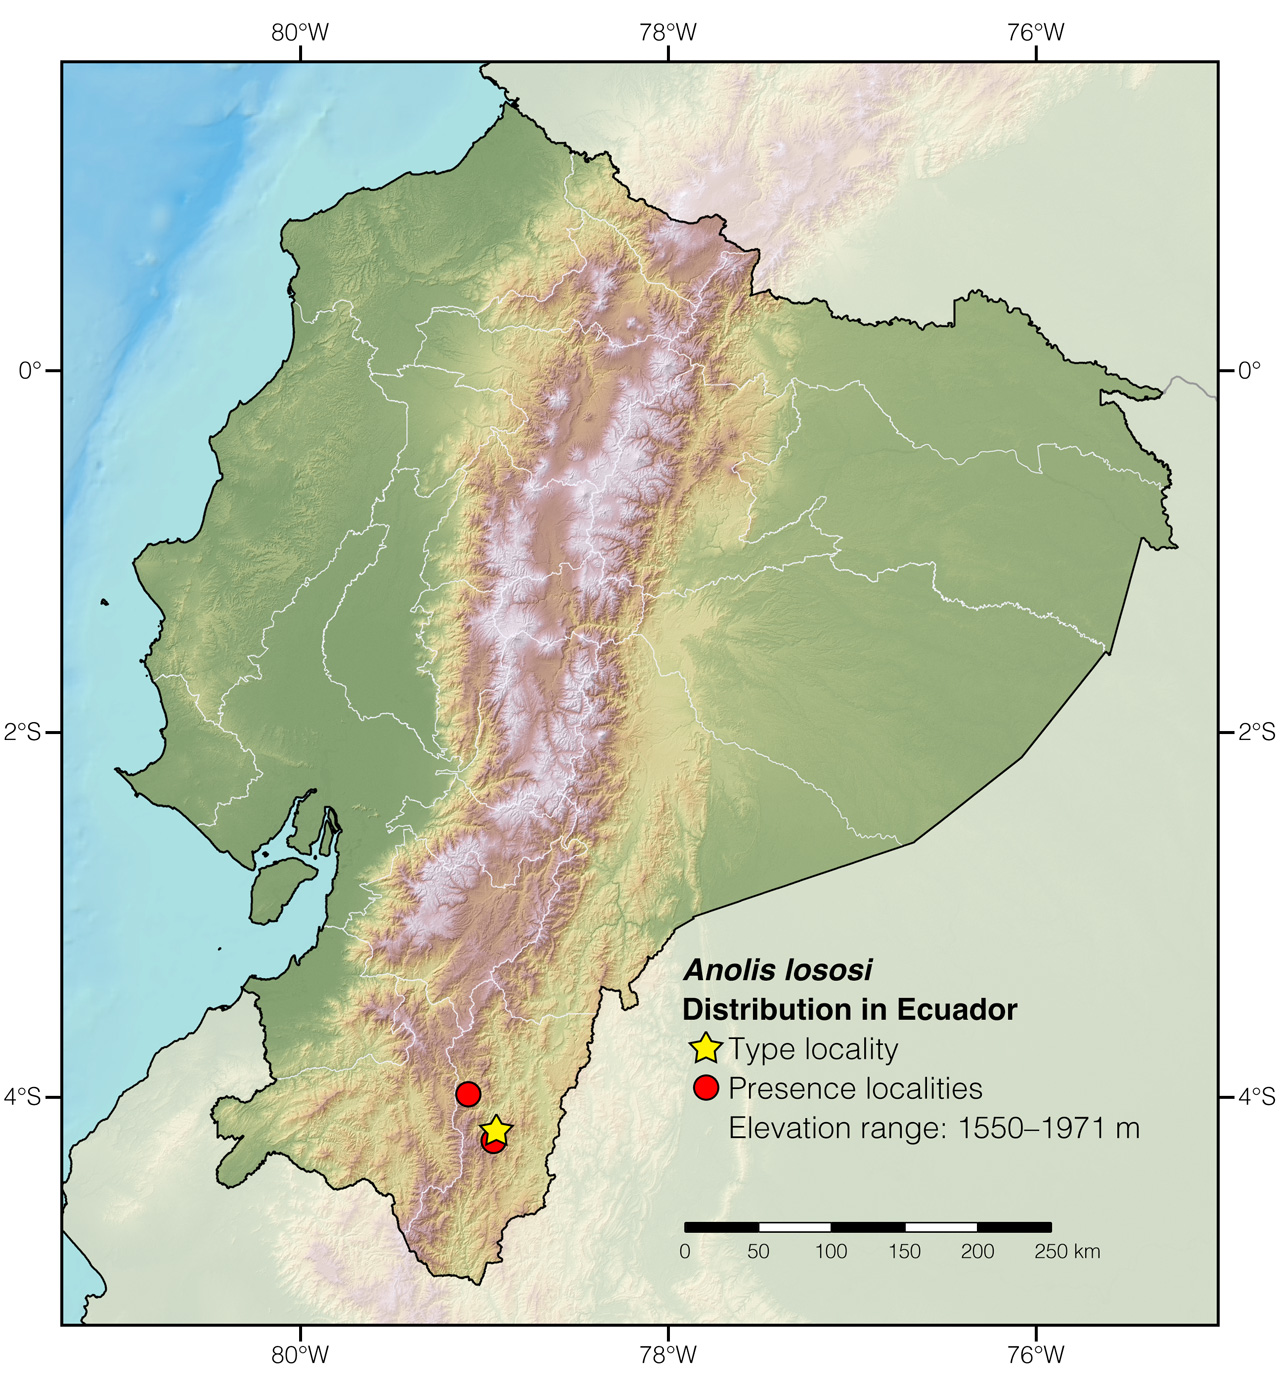 Distribution of Anolis lososi in Ecuador